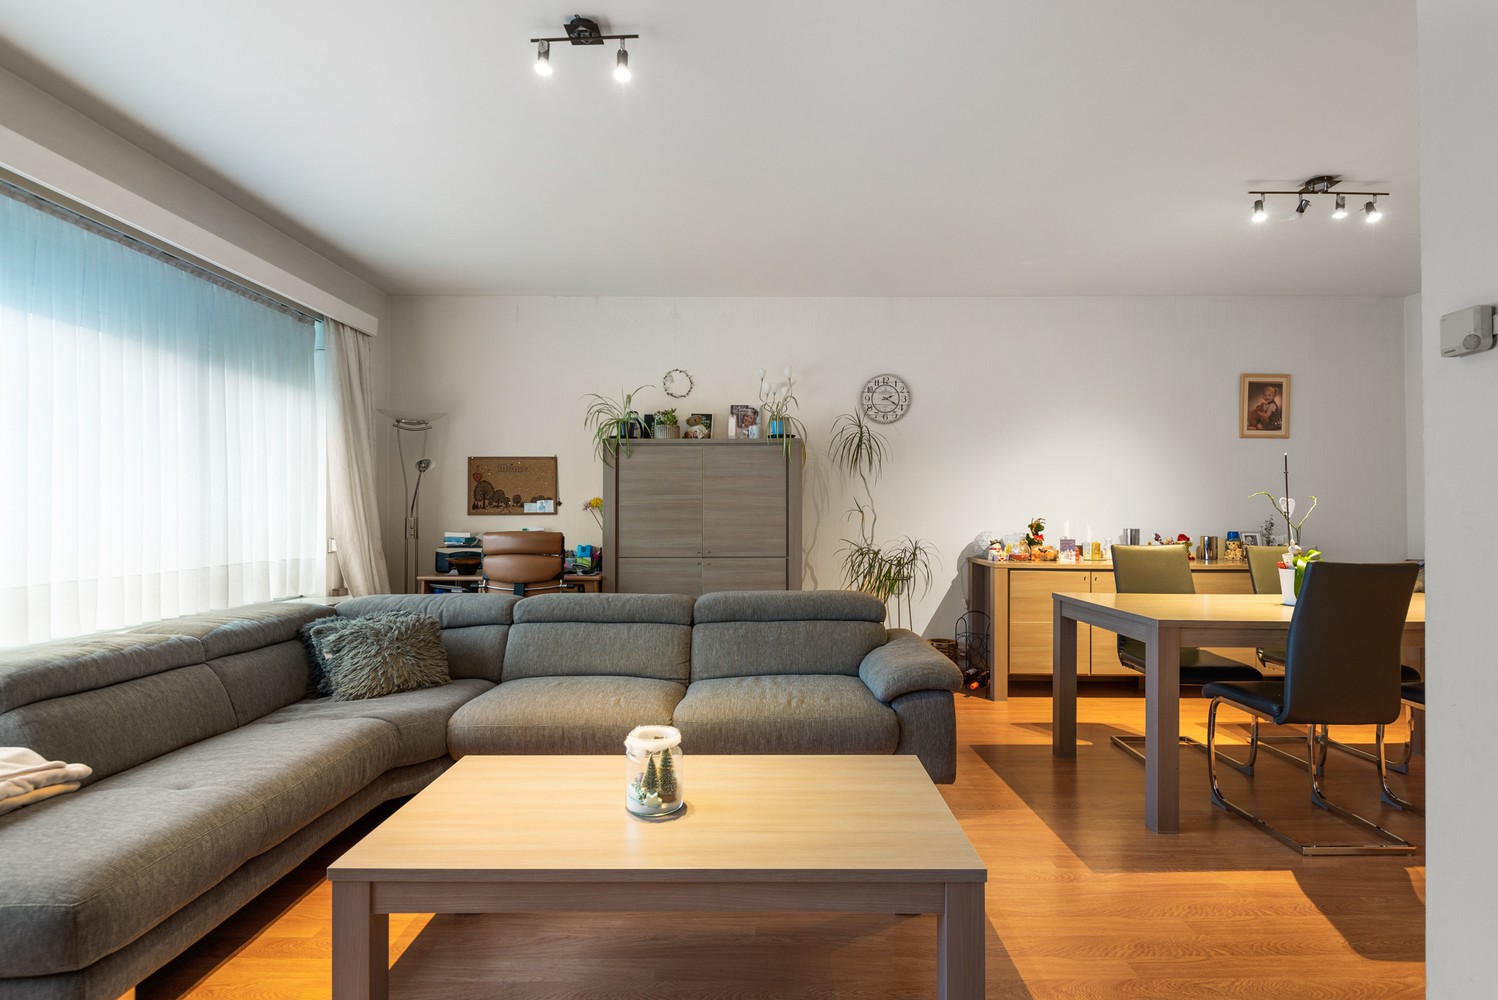 Gelijkvloers appartement met 2 slaapkamers, inclusief garage in Borsbeek! afbeelding 3